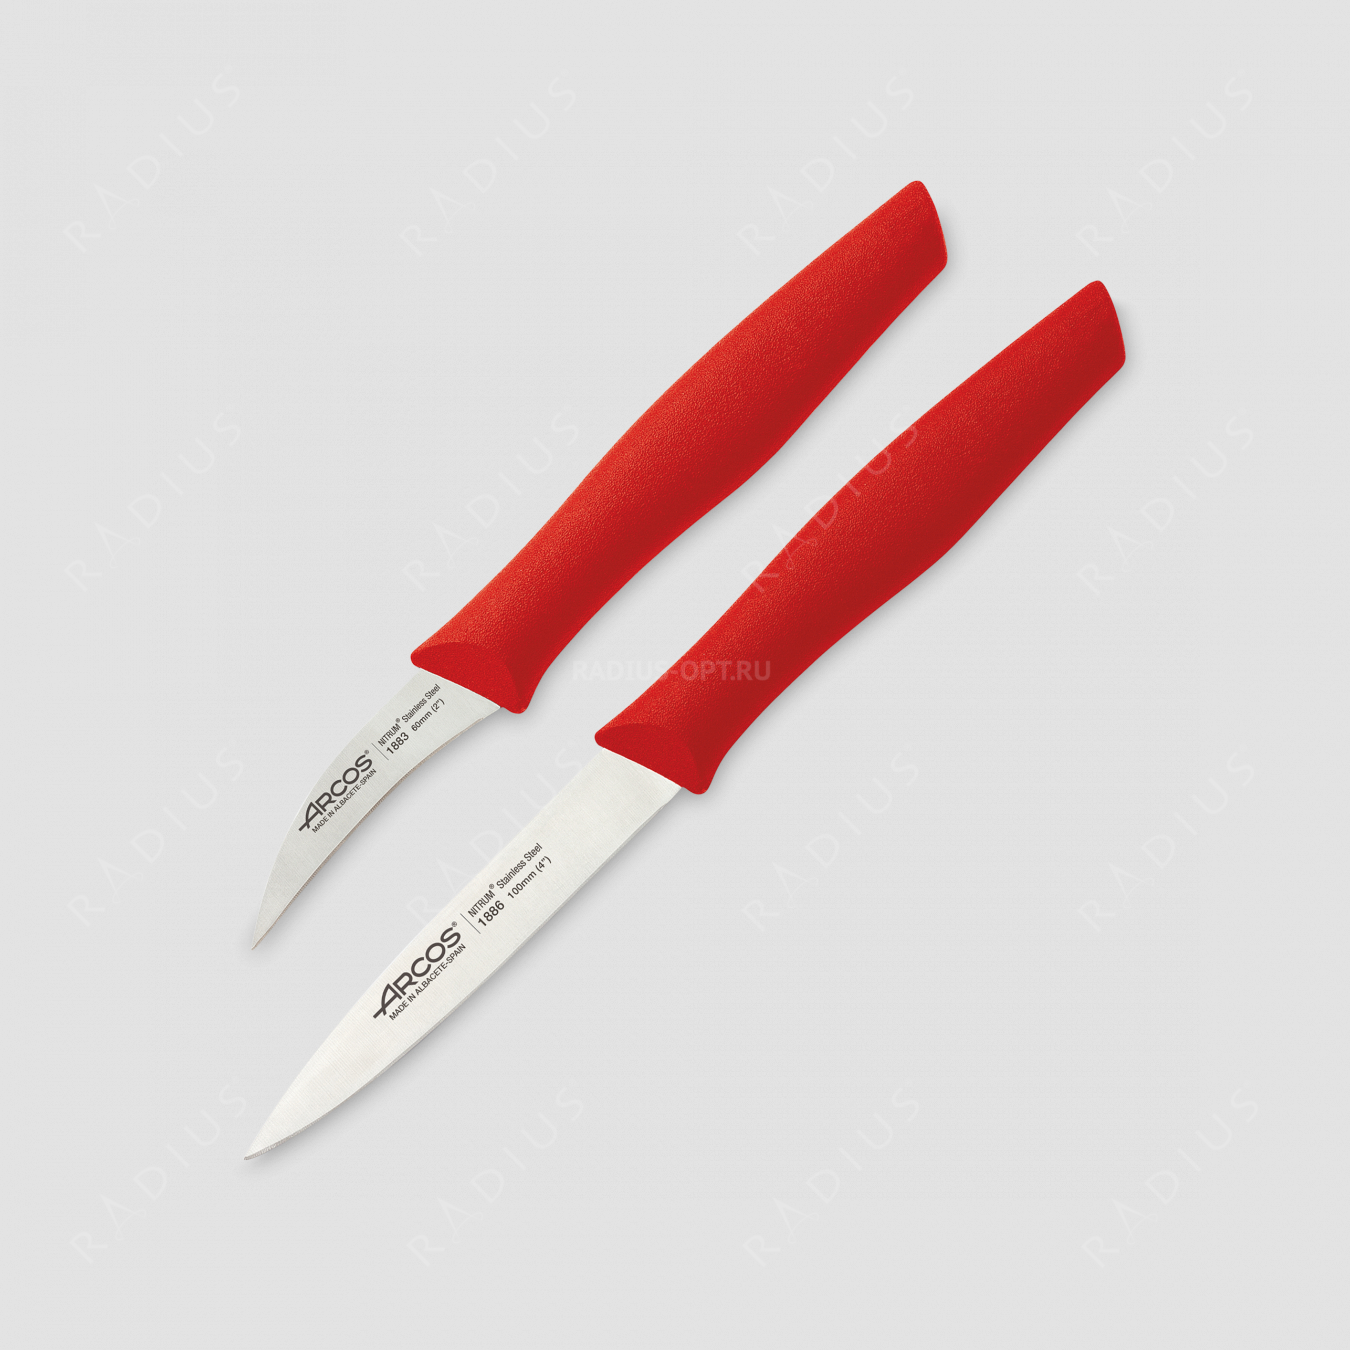 Набор из 2-х кухонных ножей для чистки и нарезки овощей, рукоять красная, серия Nova, ARCOS, Испания